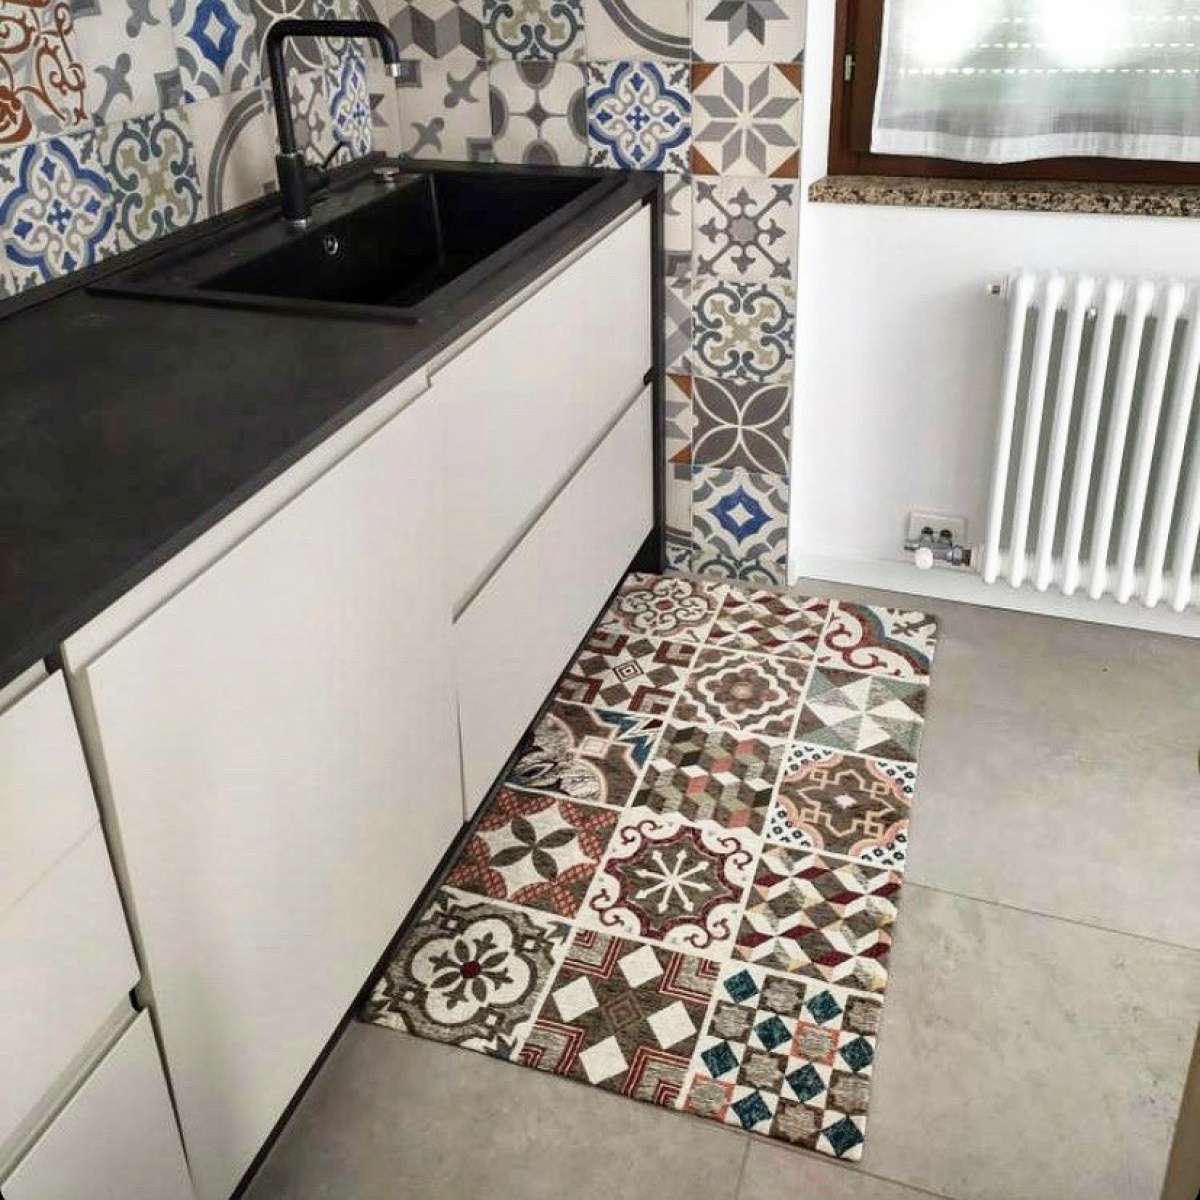 Immagine del prodotto Tappeto Maioliche Grigio Caldo Antiscivolo e Lavabile in Lavatrice | Pietro Zanetti Home